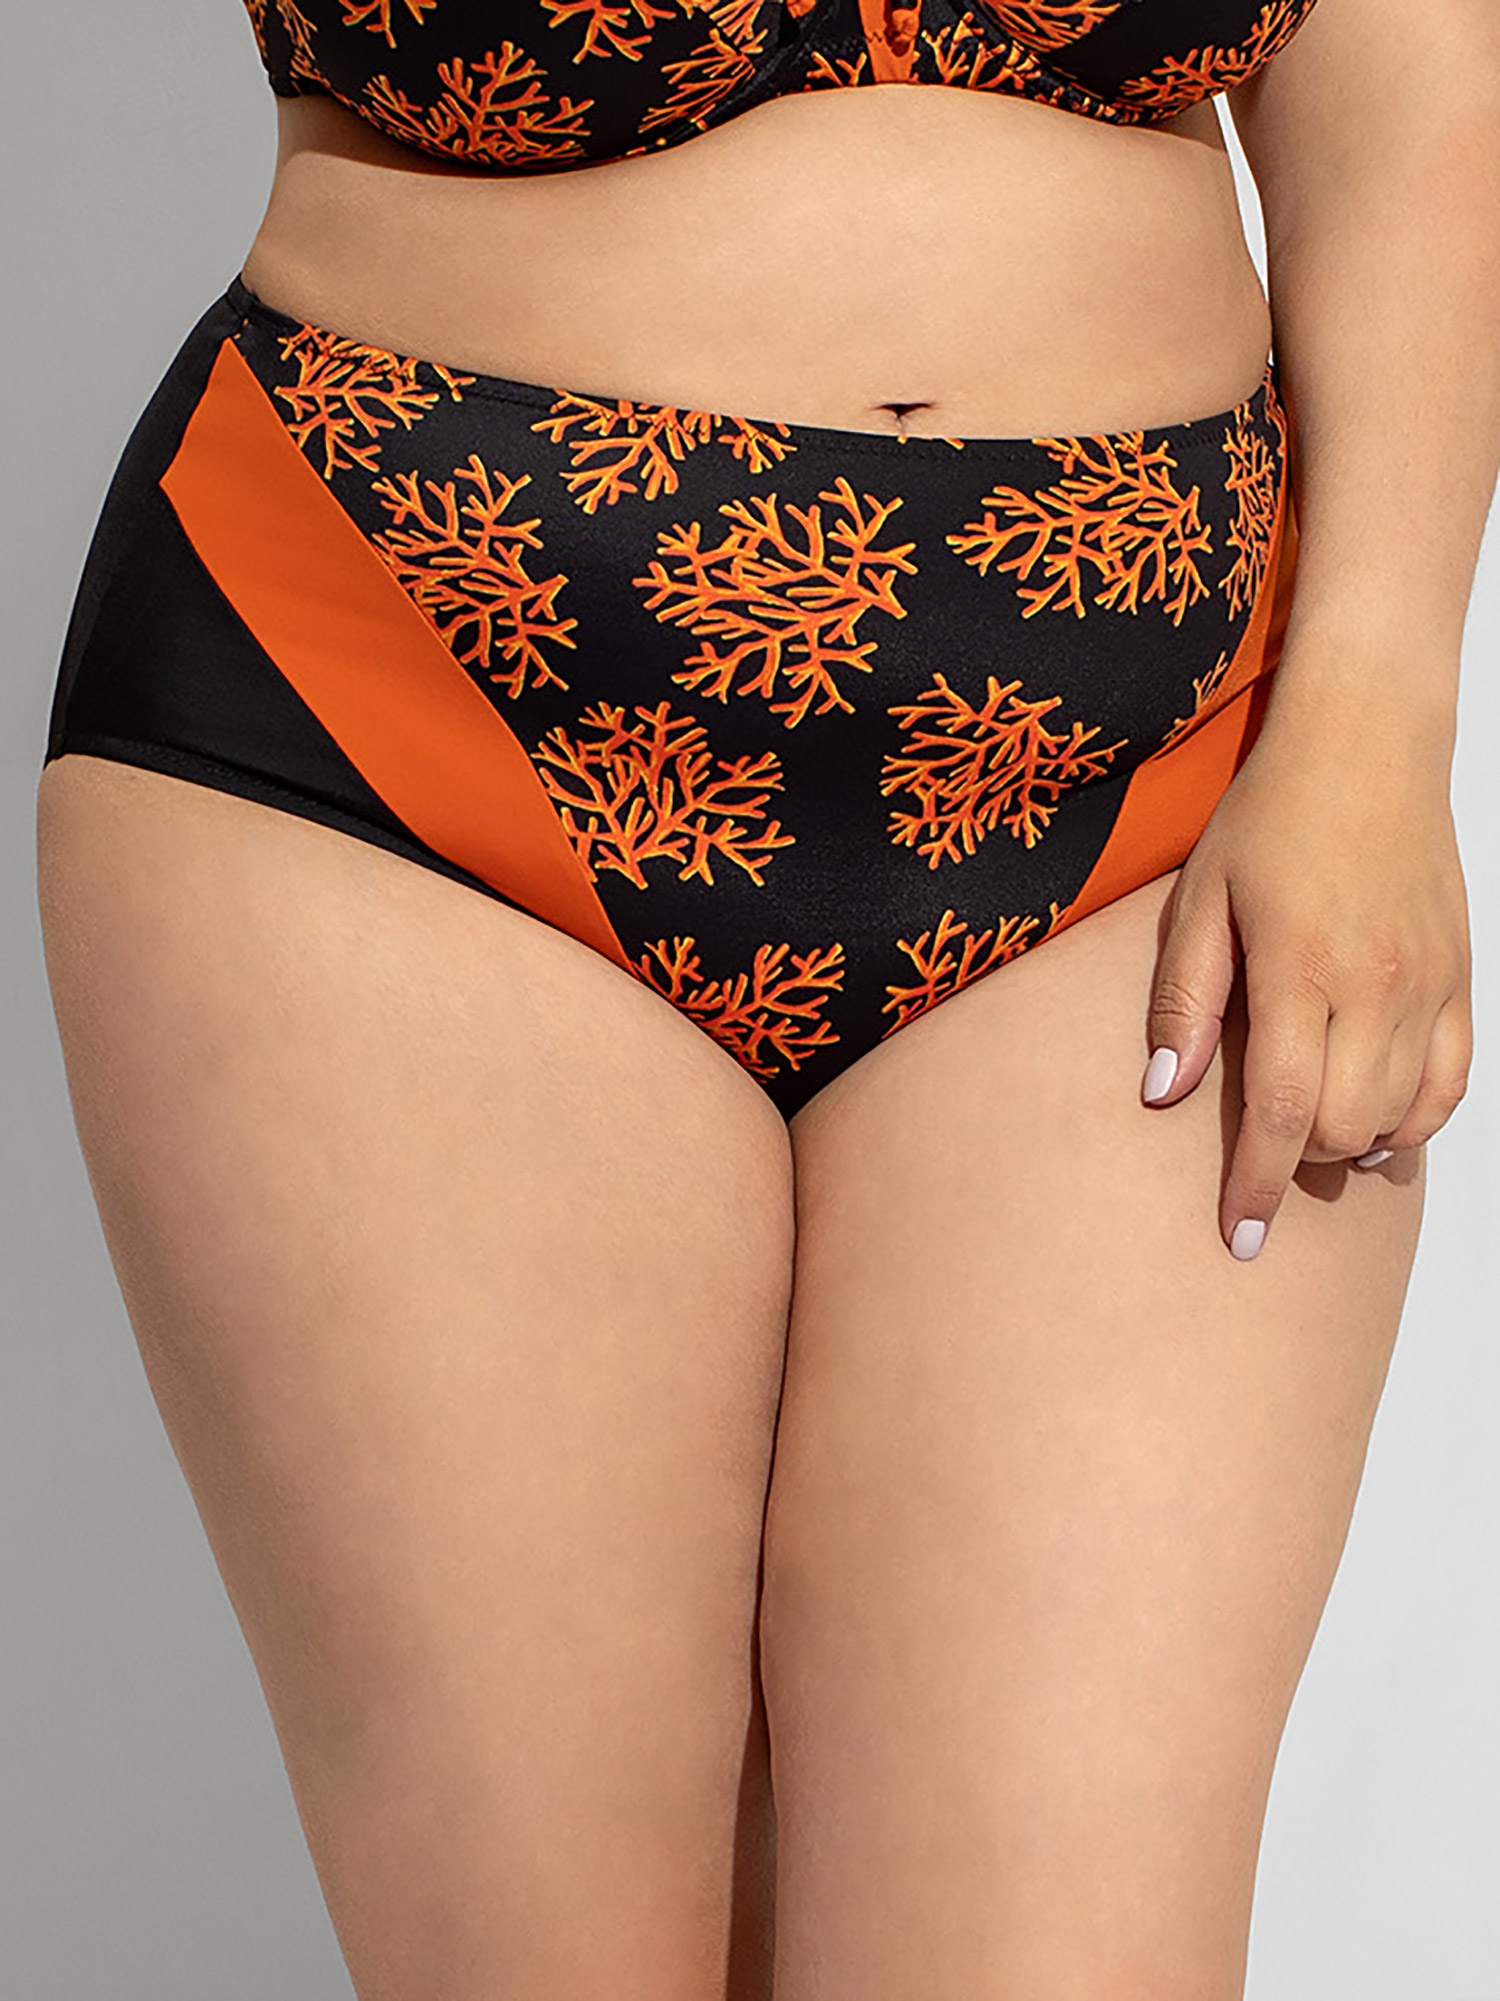 Maxi - Sort bikini truse med oransje print fra Plaisir